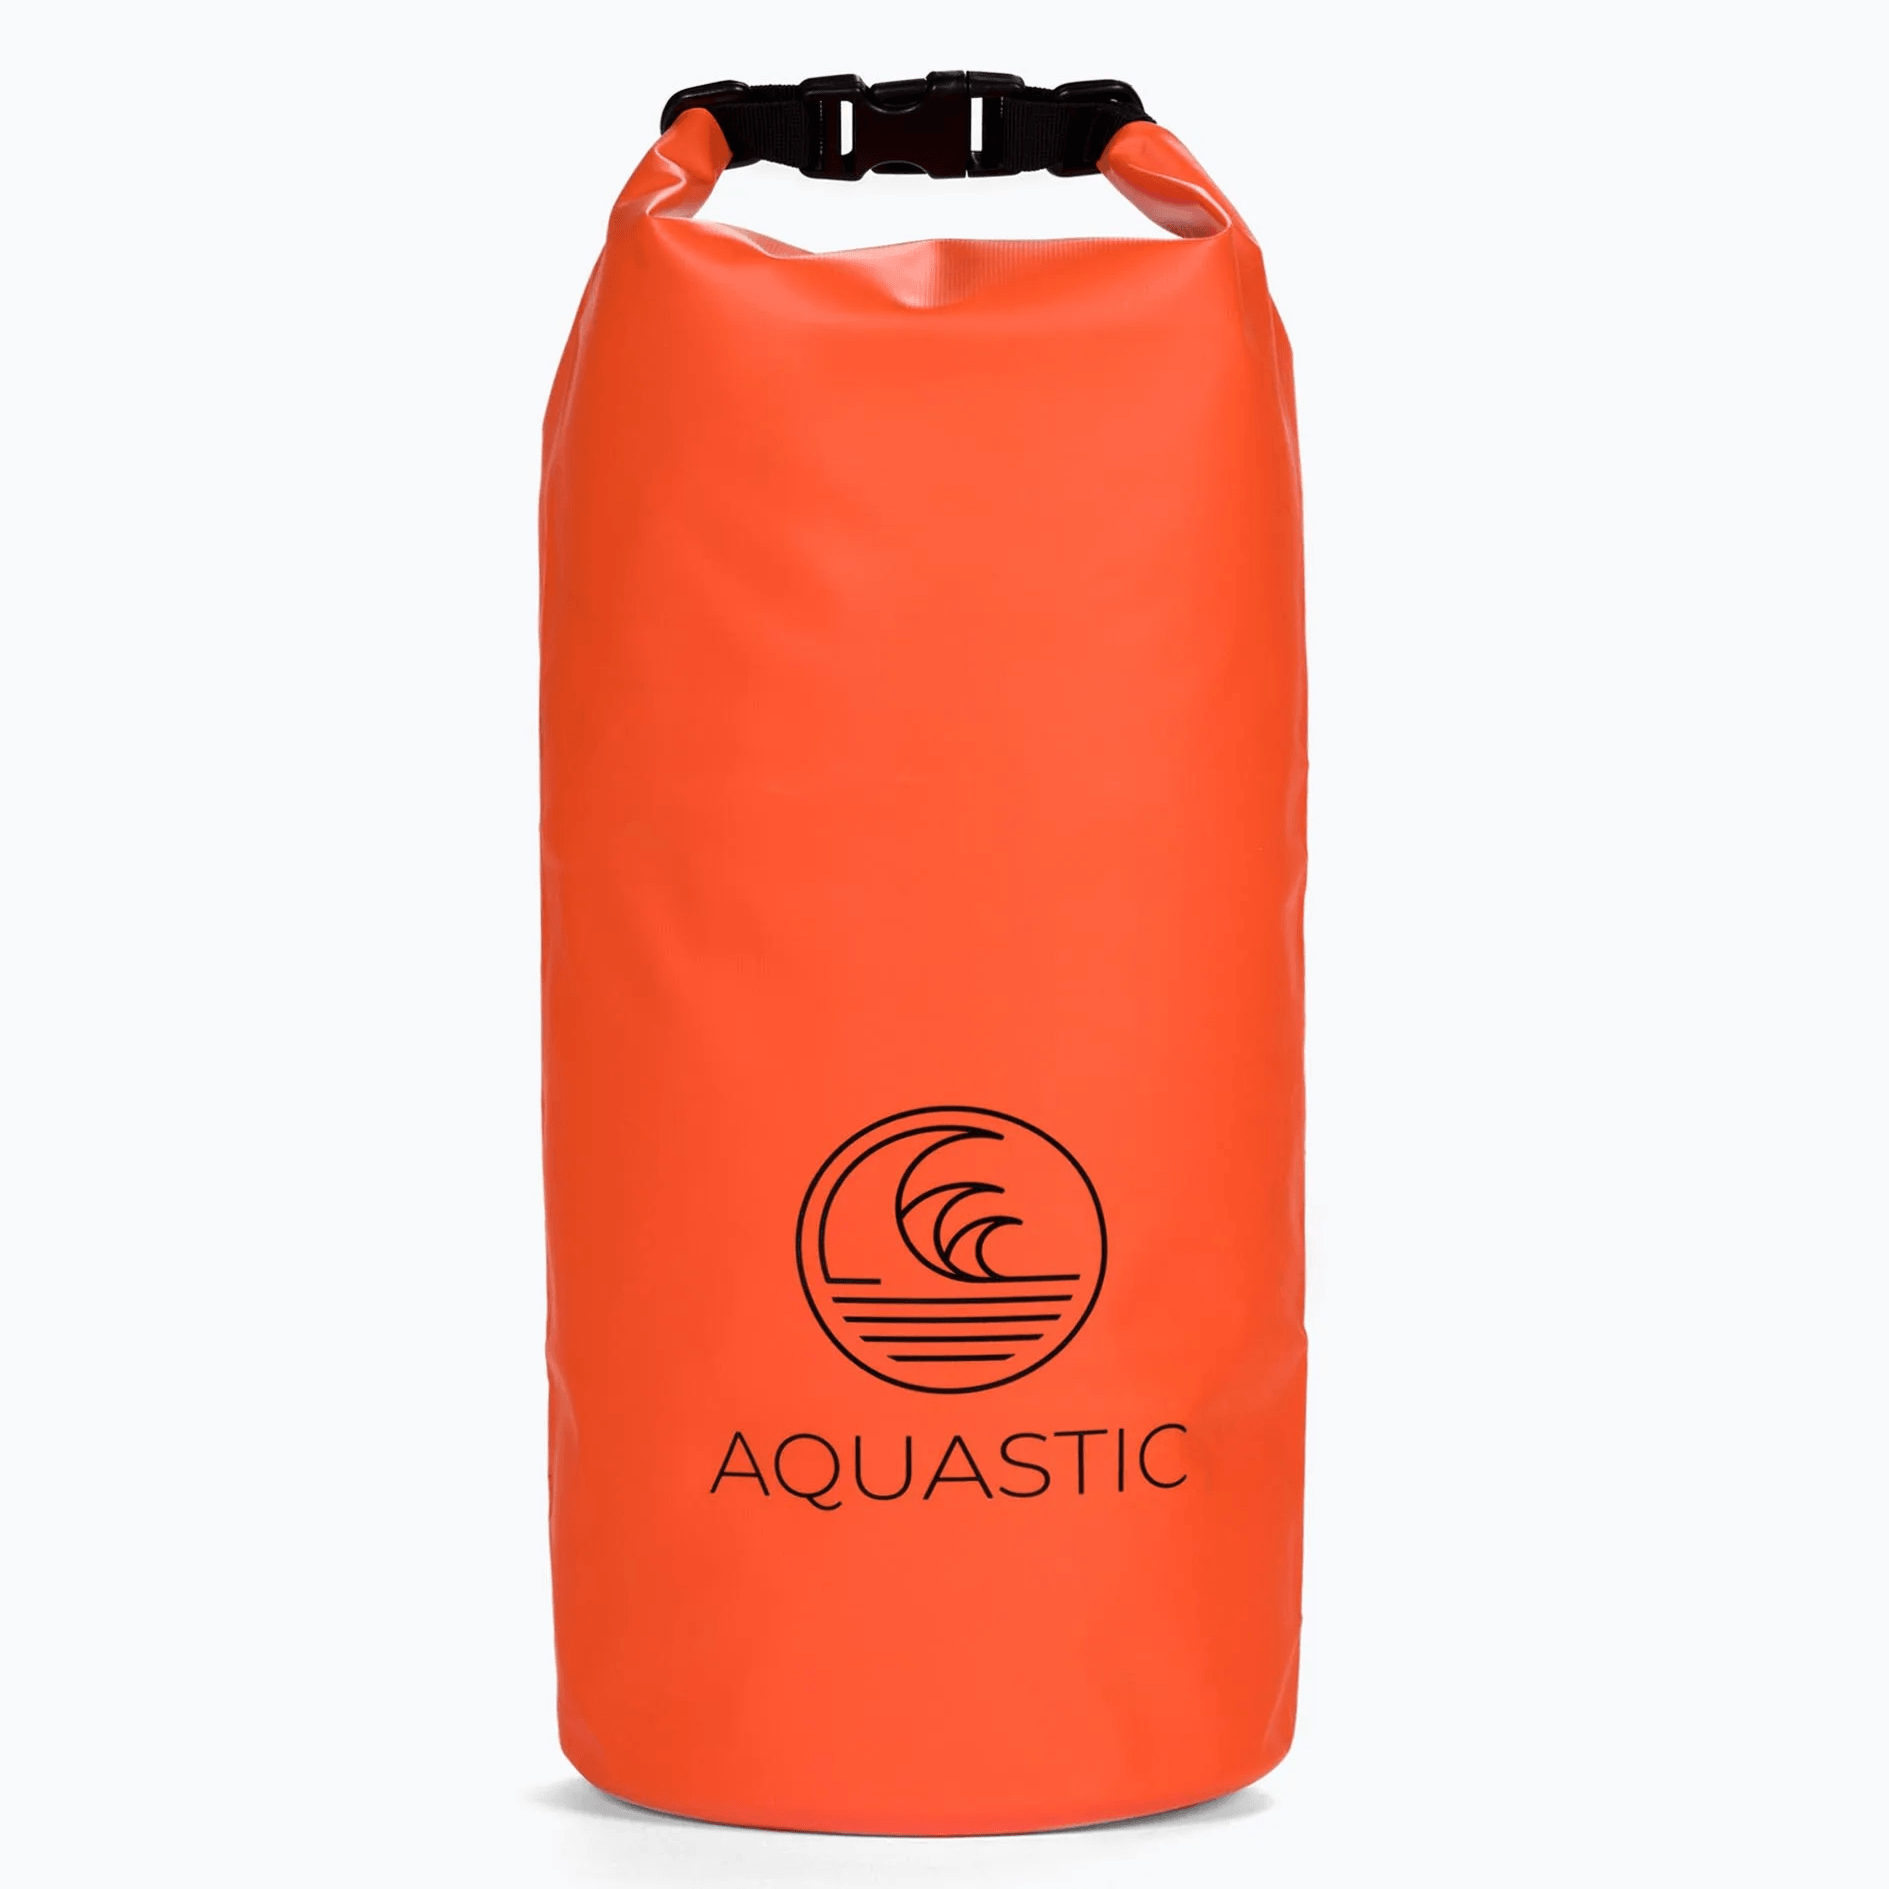 Aquastic: SUP 20 L Water Borse